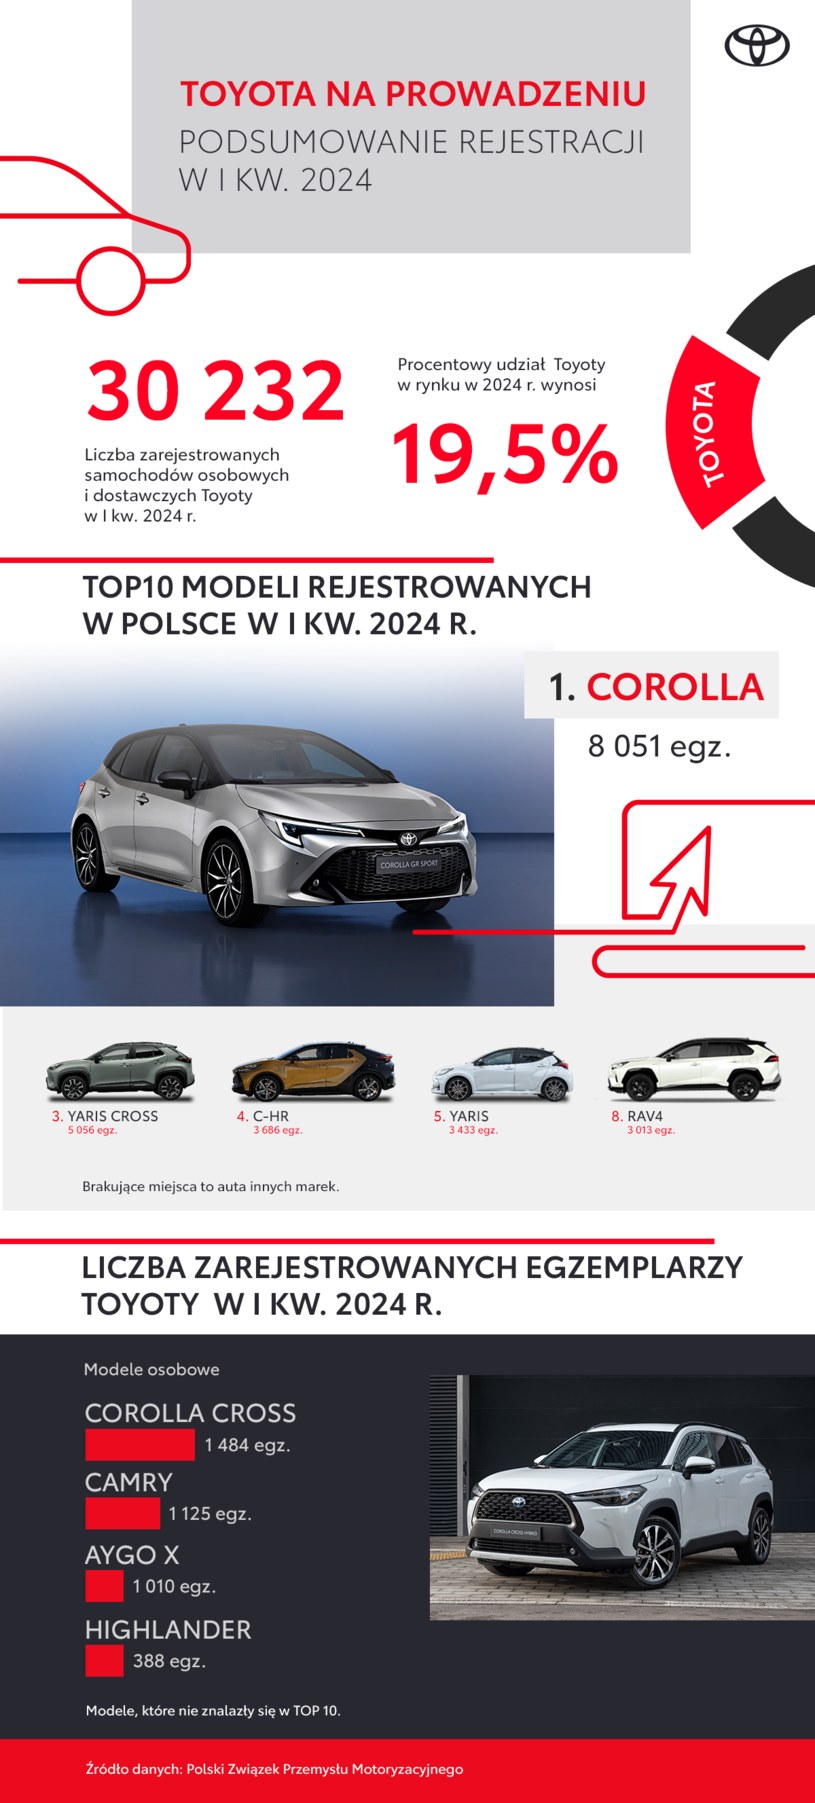 Toyota liderem polskiego rynku po trzech miesiącach 2024 roku. /Toyota